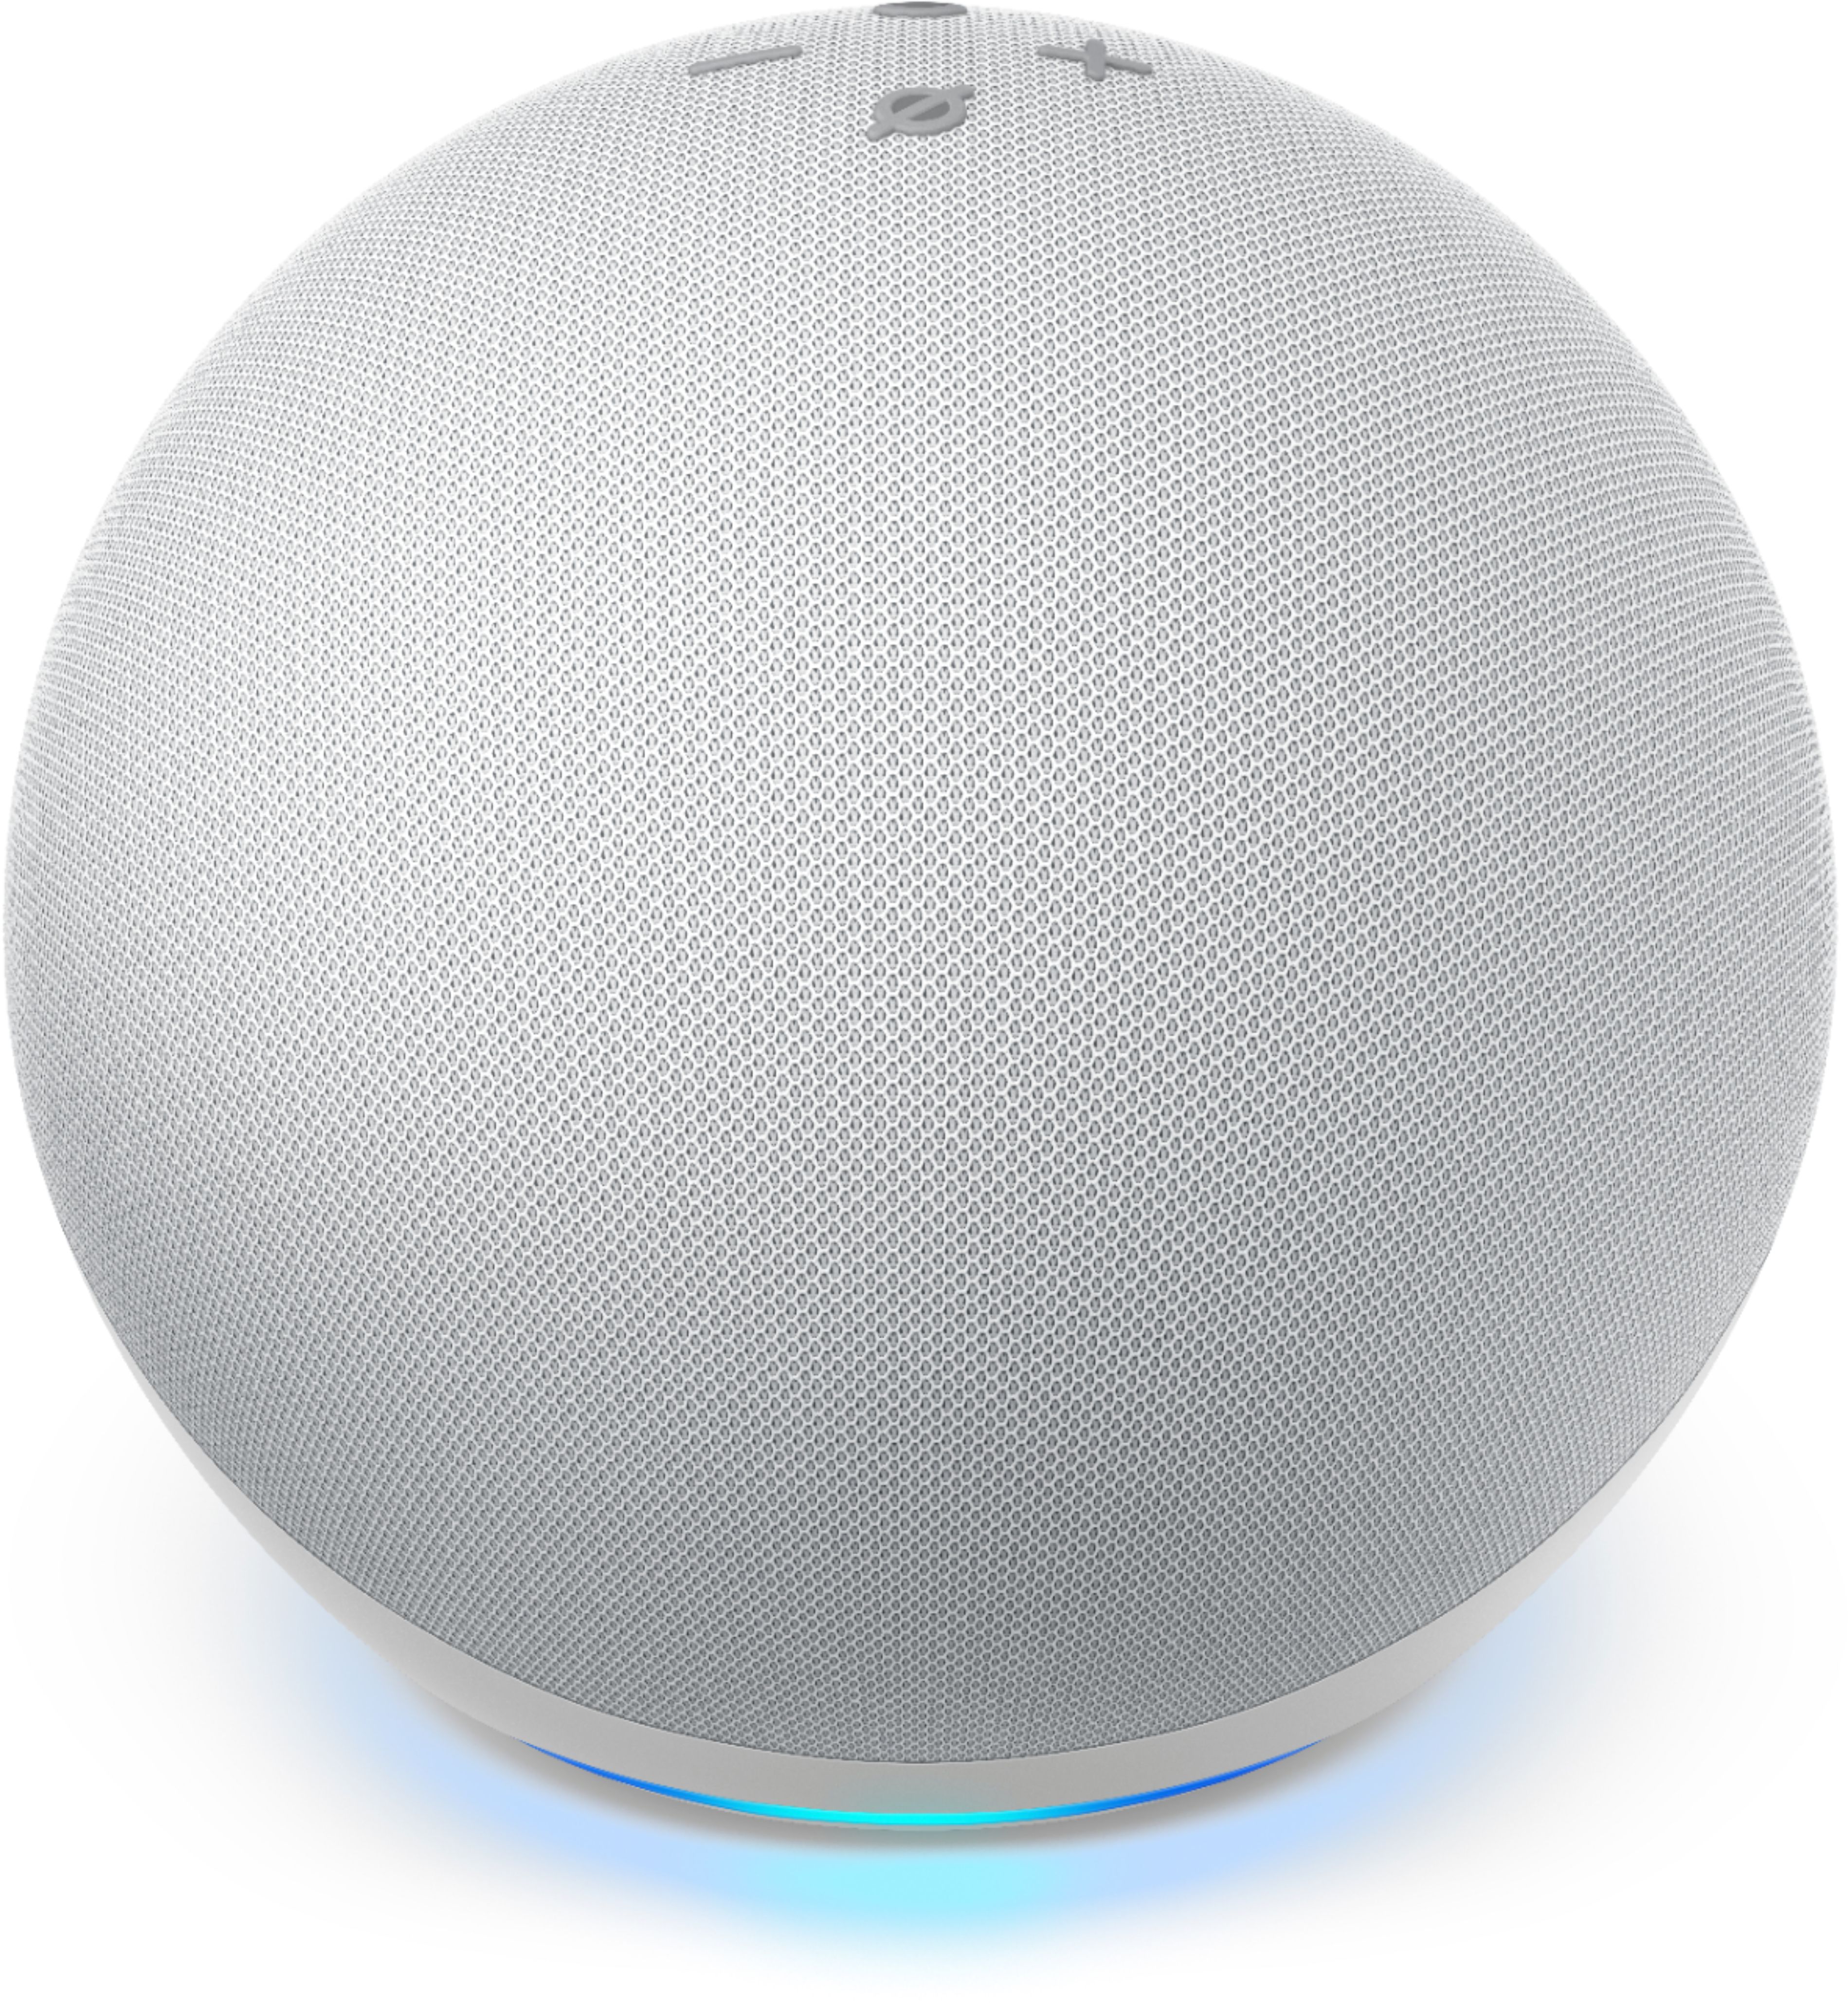 Isolé D' Echo Dot 4ème Génération Haut-parleur Intelligent